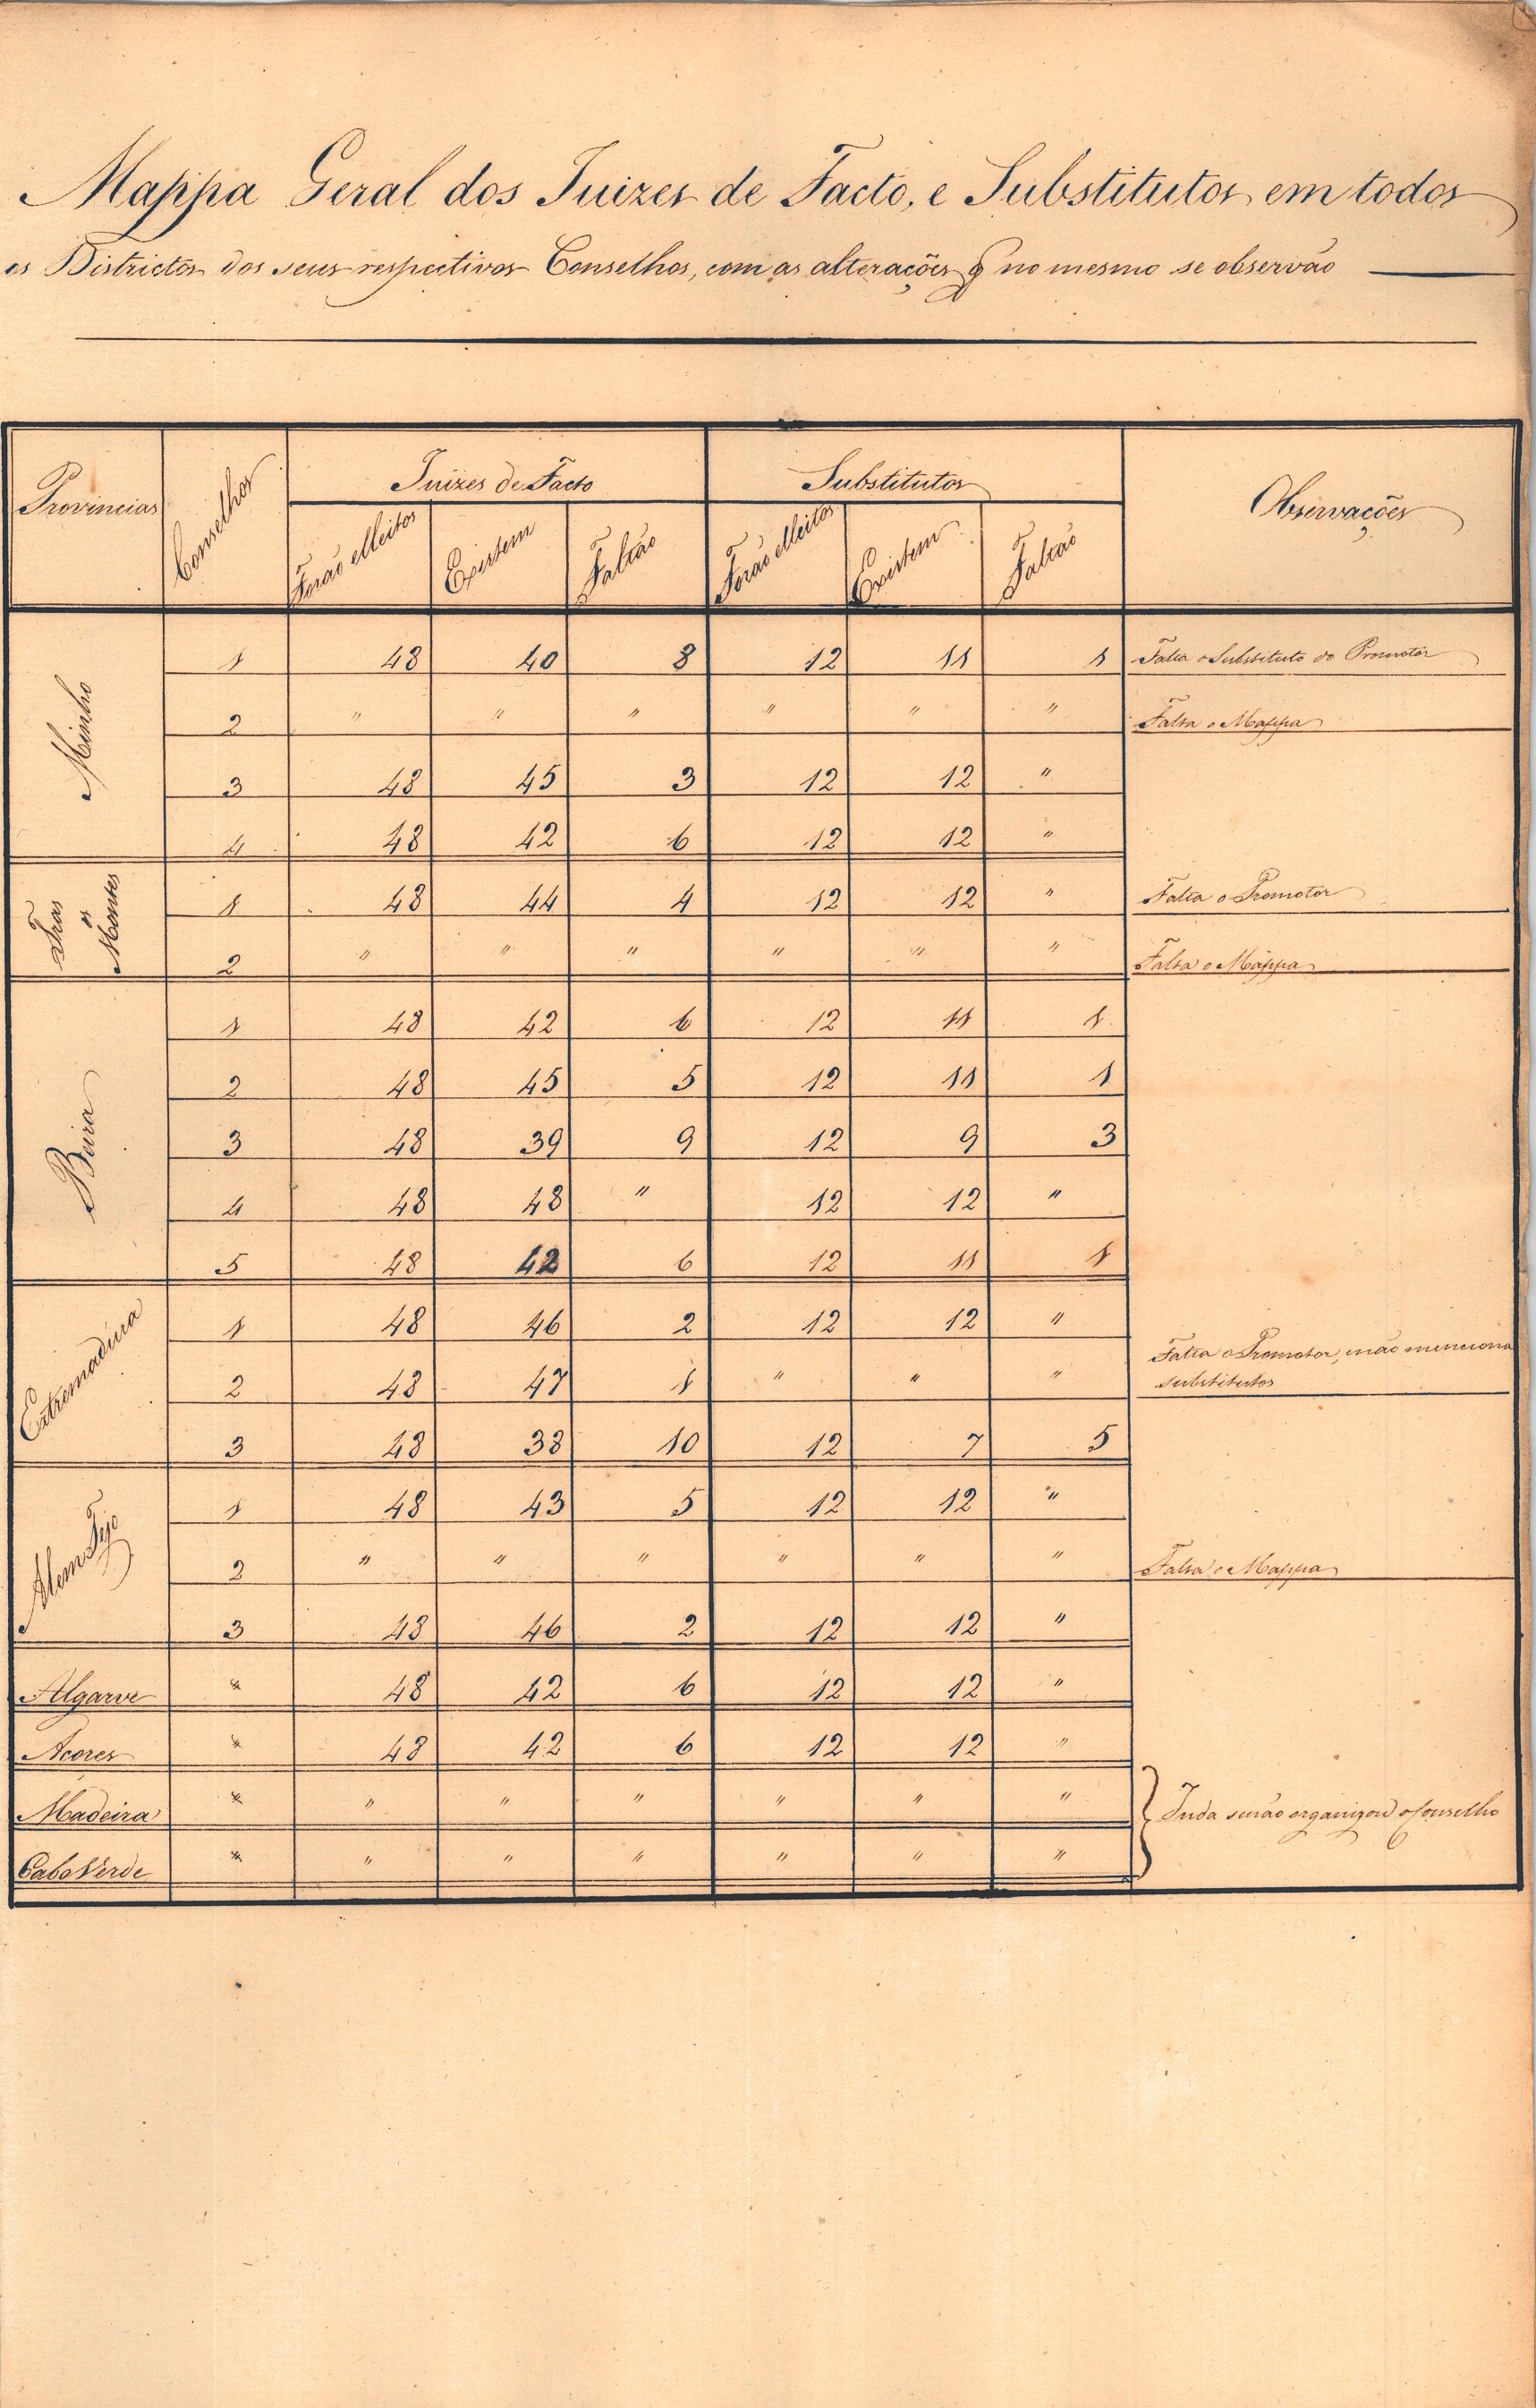 Ofício do Tribunal da Liberdade de Imprensa enviando Consulta pedida pela Comissão. 15 de maio de 1823. Cota AHP: Secção I/II, cx. 85, mç. 52, doc. 25.